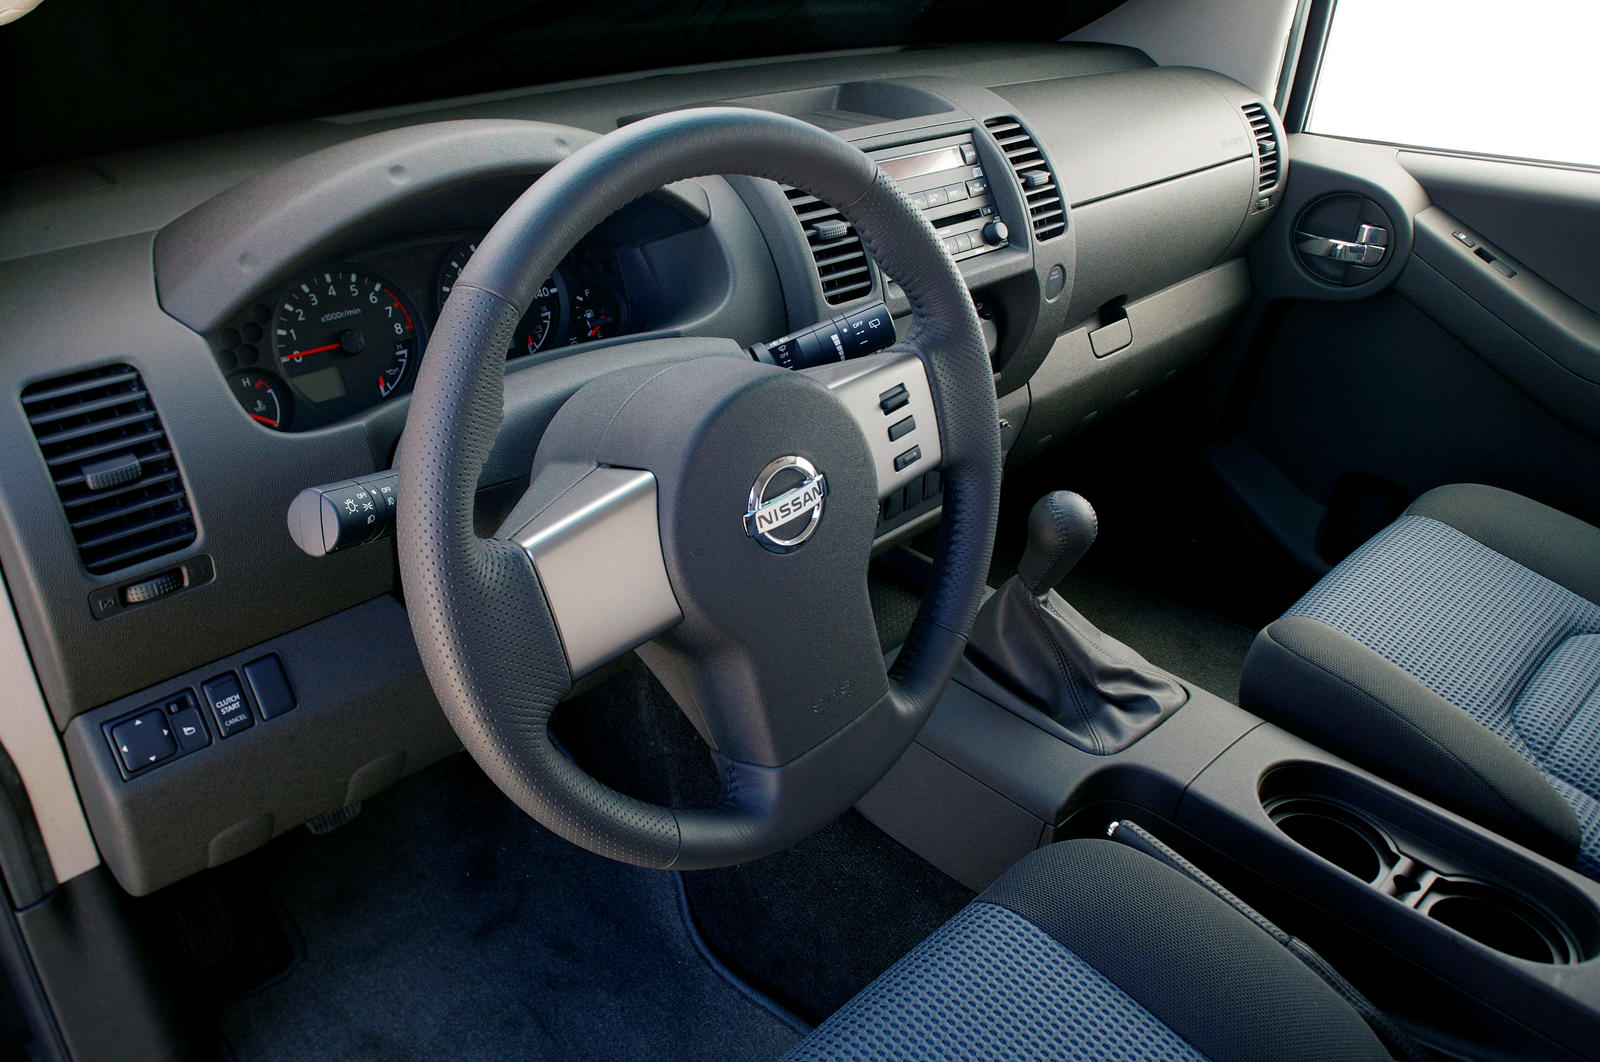 2008 Nissan Xterra Interior Photos | CarBuzz